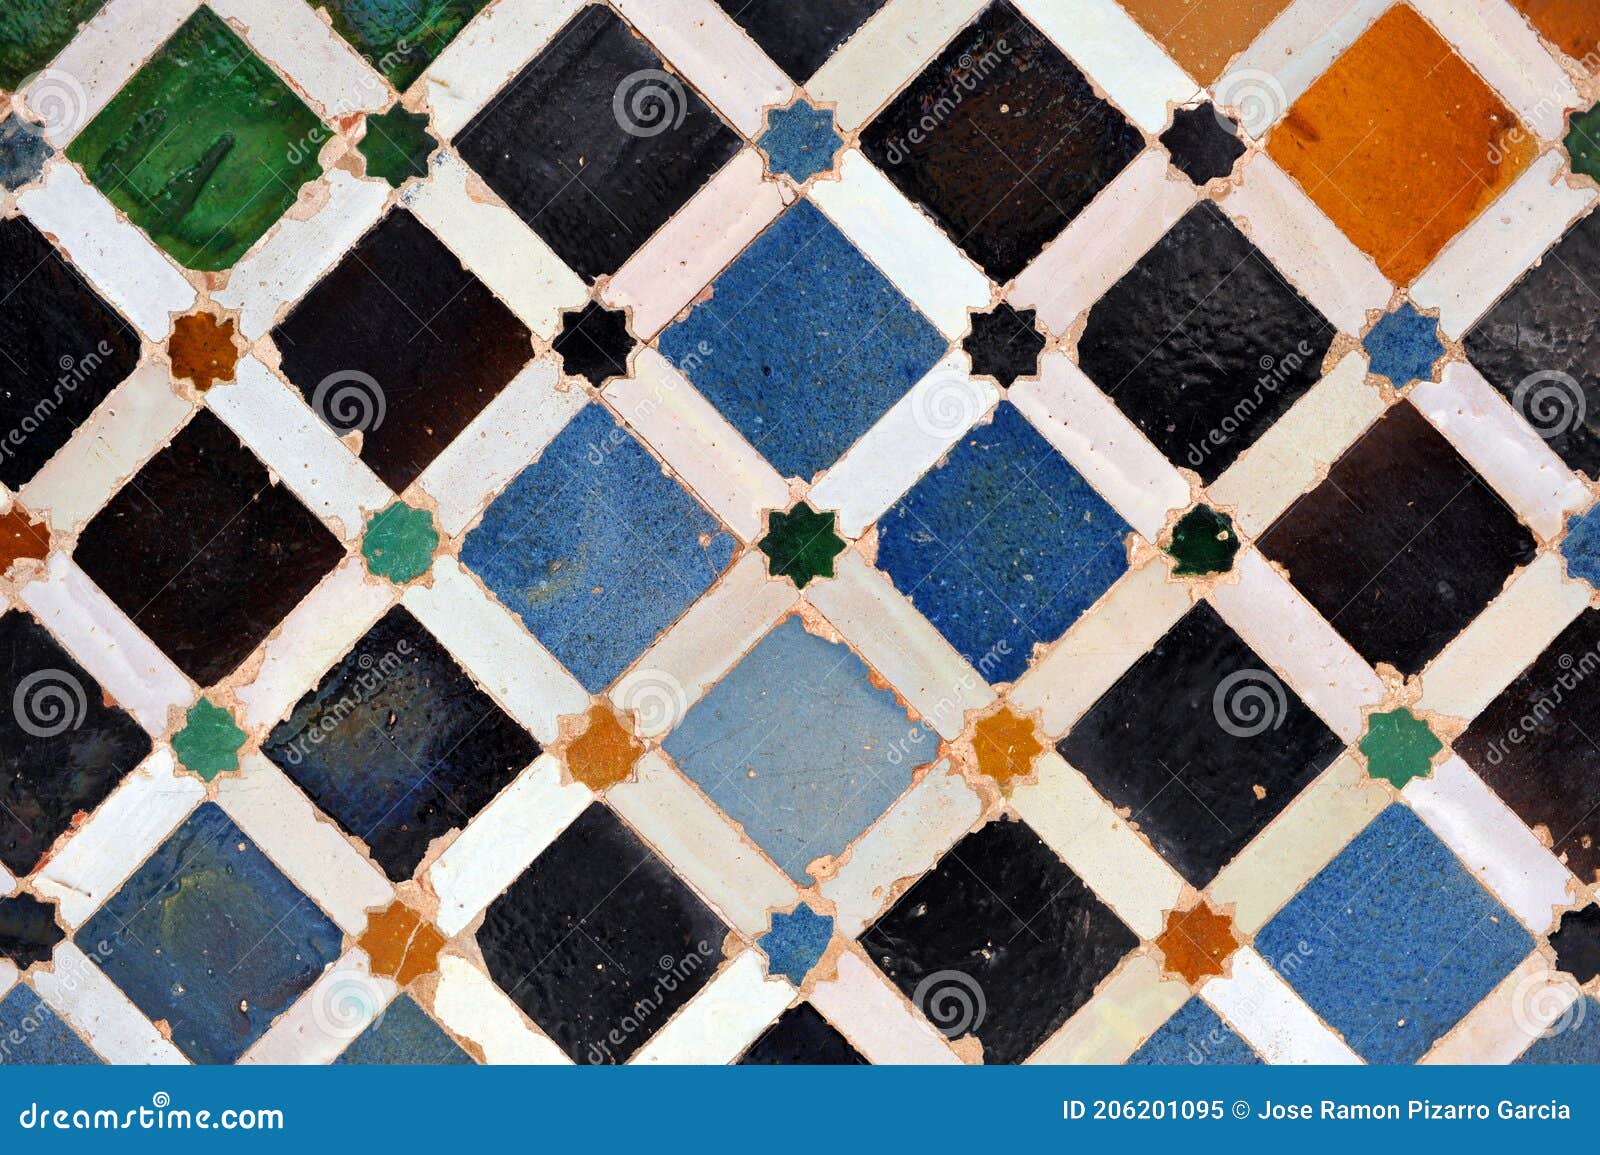 azulejos de al andalus. mosaico ÃÂ¡rabe. azulejos de granada. azulejos ÃÂ¡rabes de espaÃÂ±a. alhambra de granada